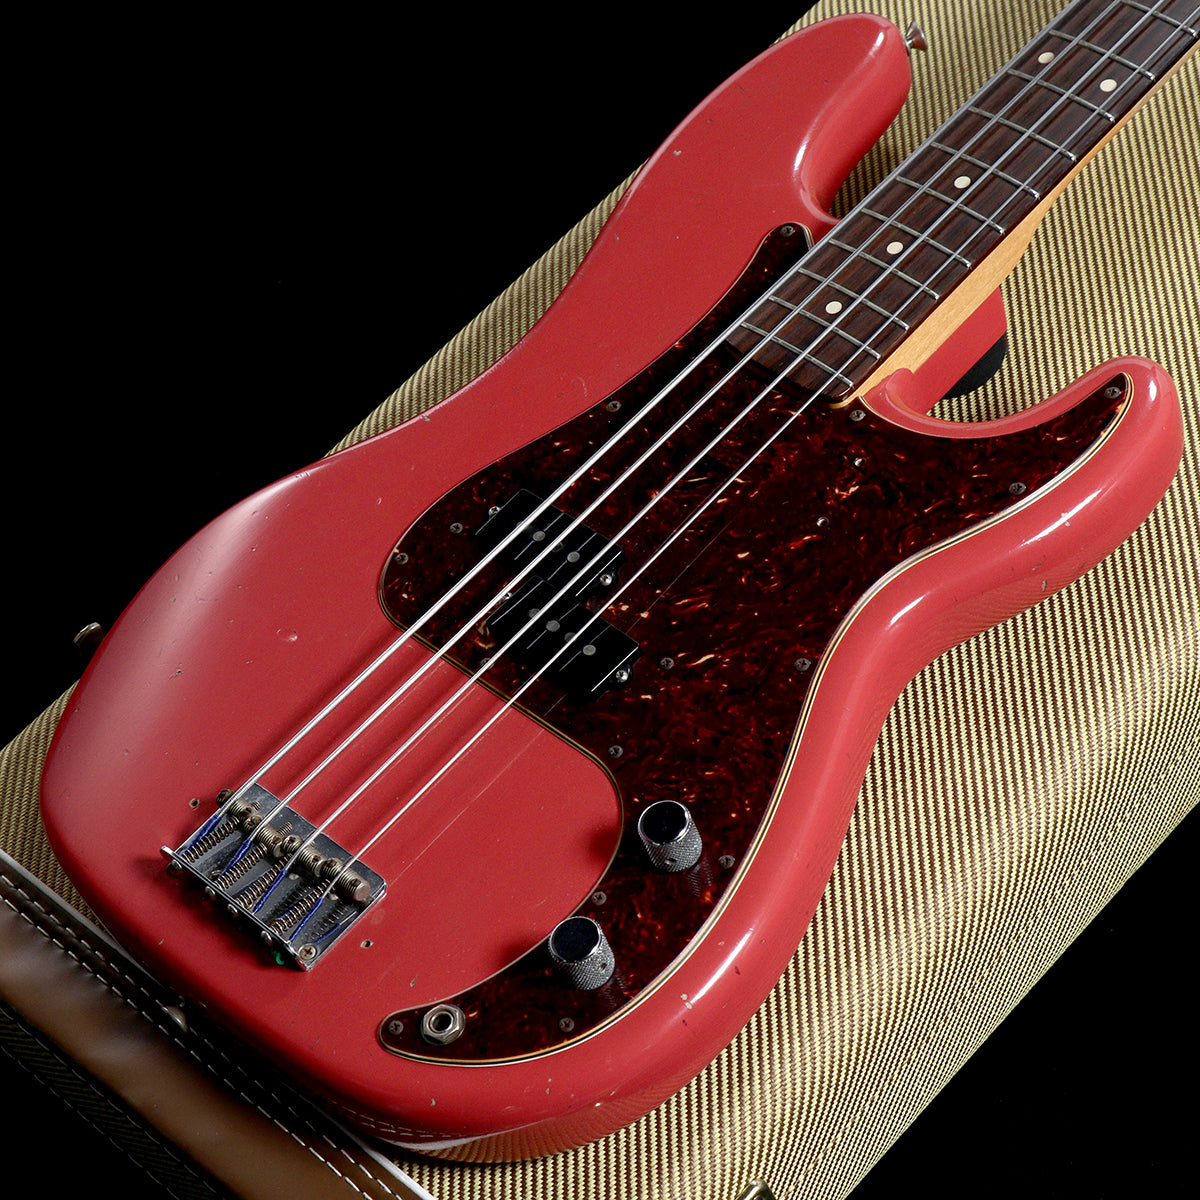 [SN R90155] USED FENDER CUSTOM SHOP / Pino Palladino Signature Precision Bass Fiesta Red Relic 2017 [05]